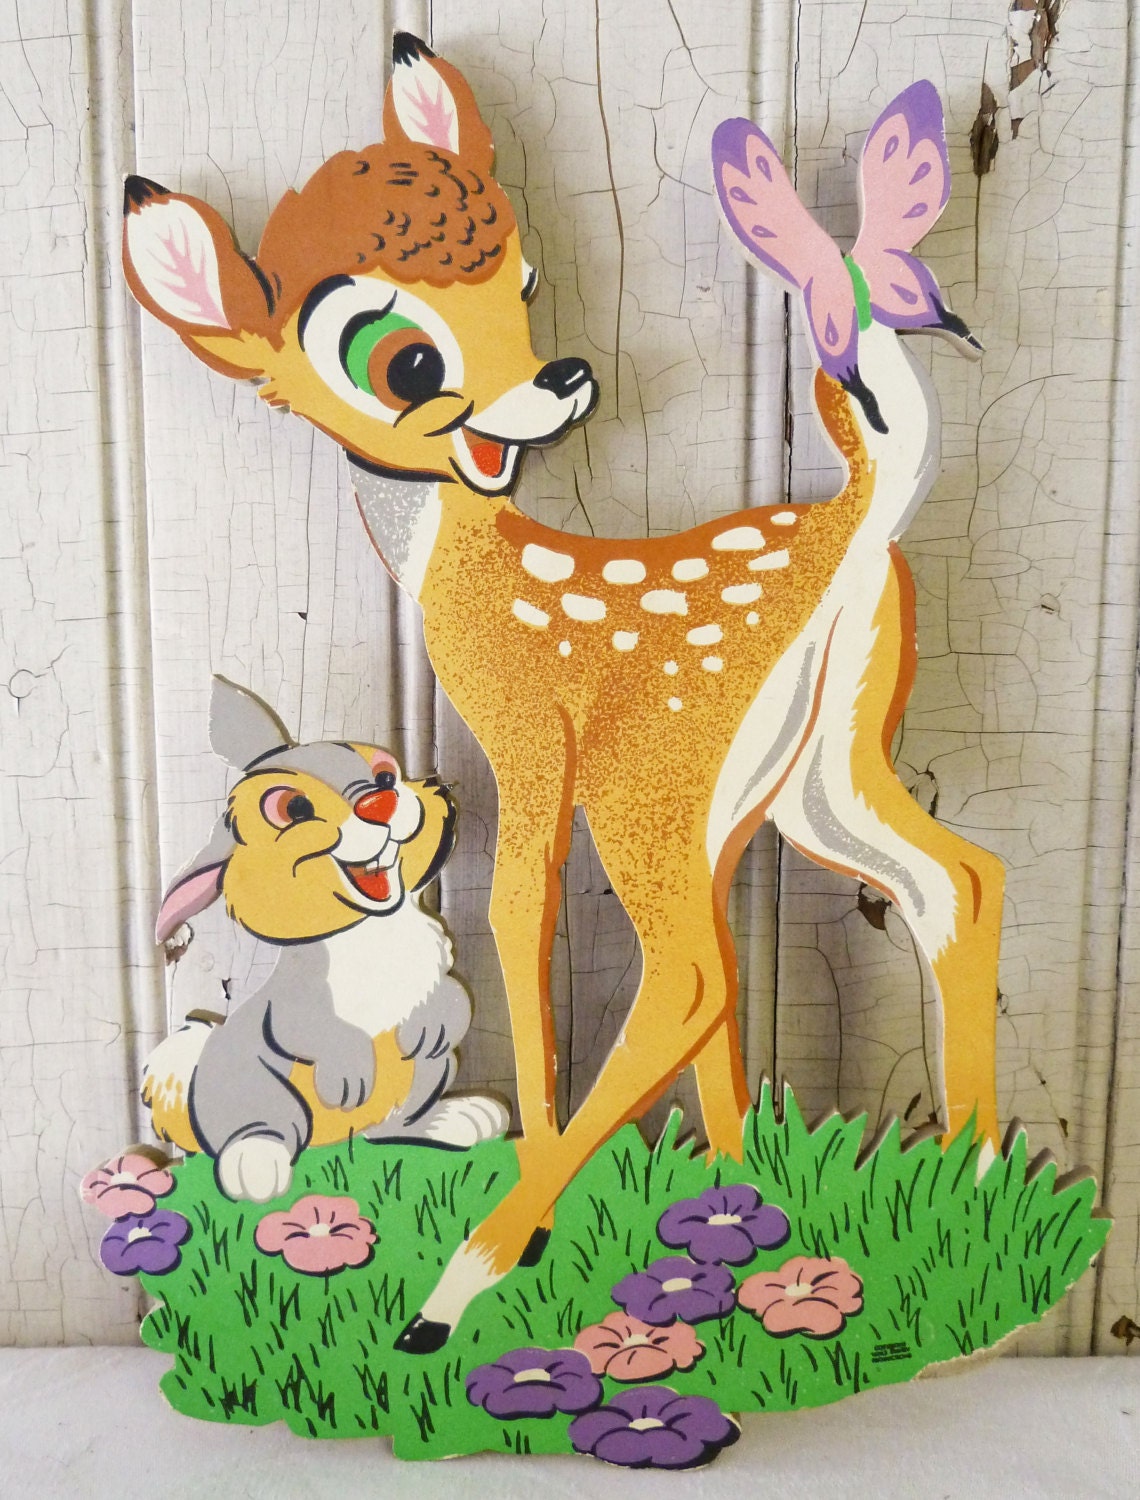 thumper bambi wall art